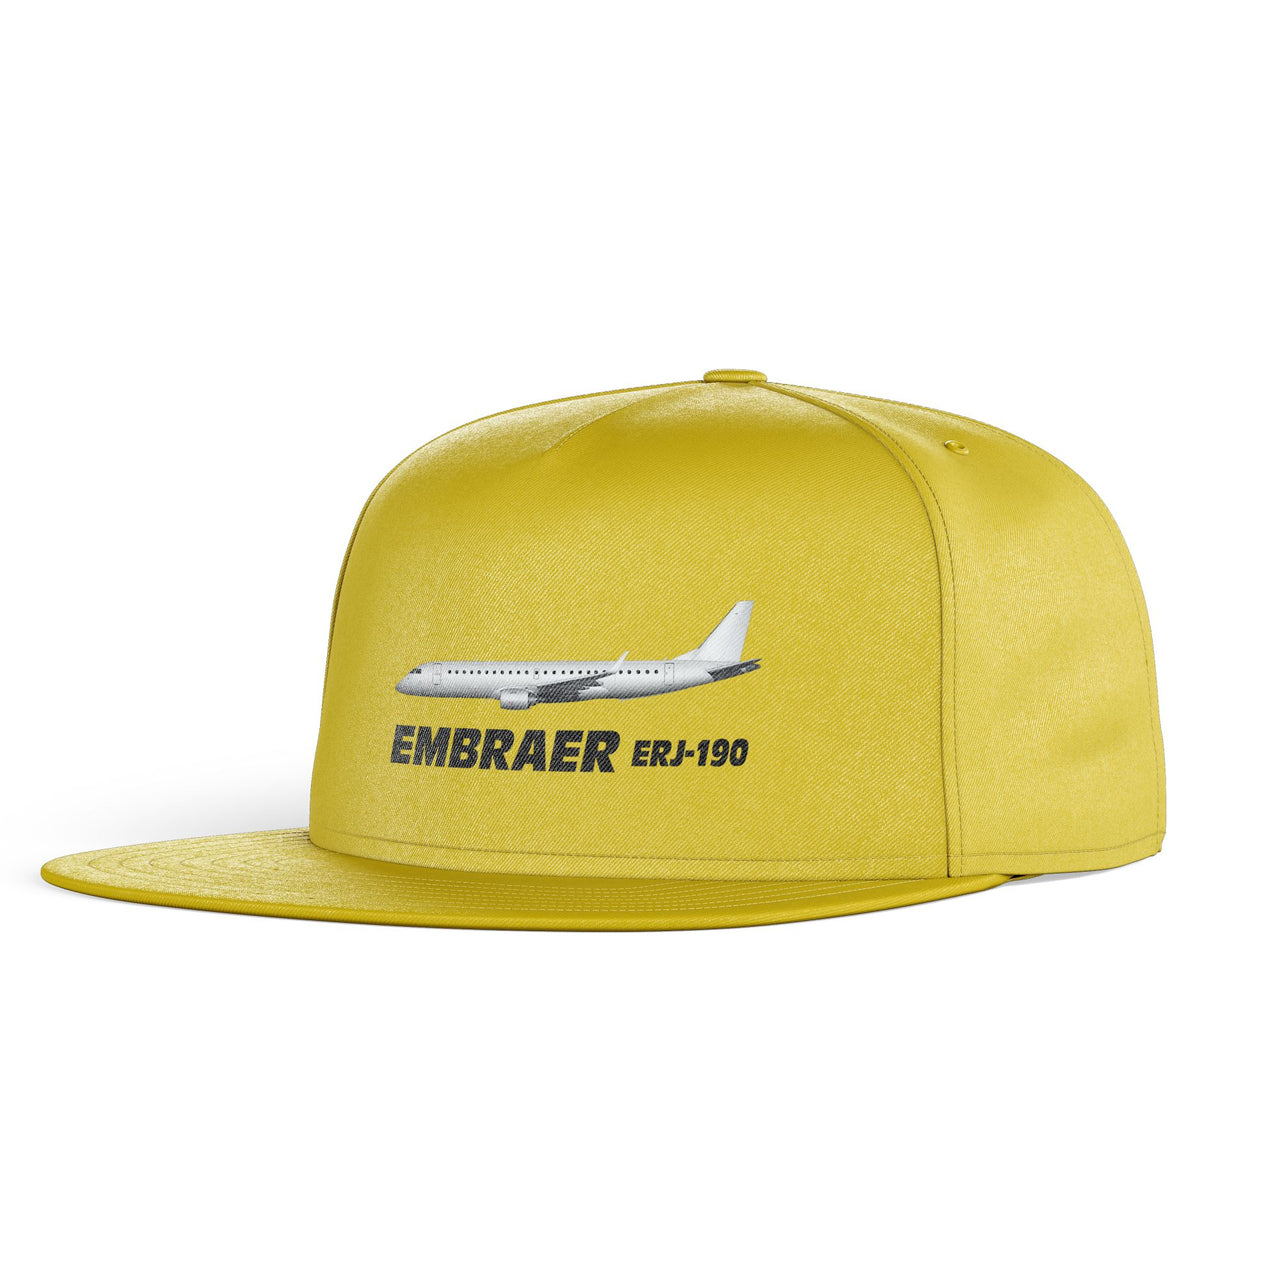 The Embraer ERJ-190 Designed Snapback Caps & Hats